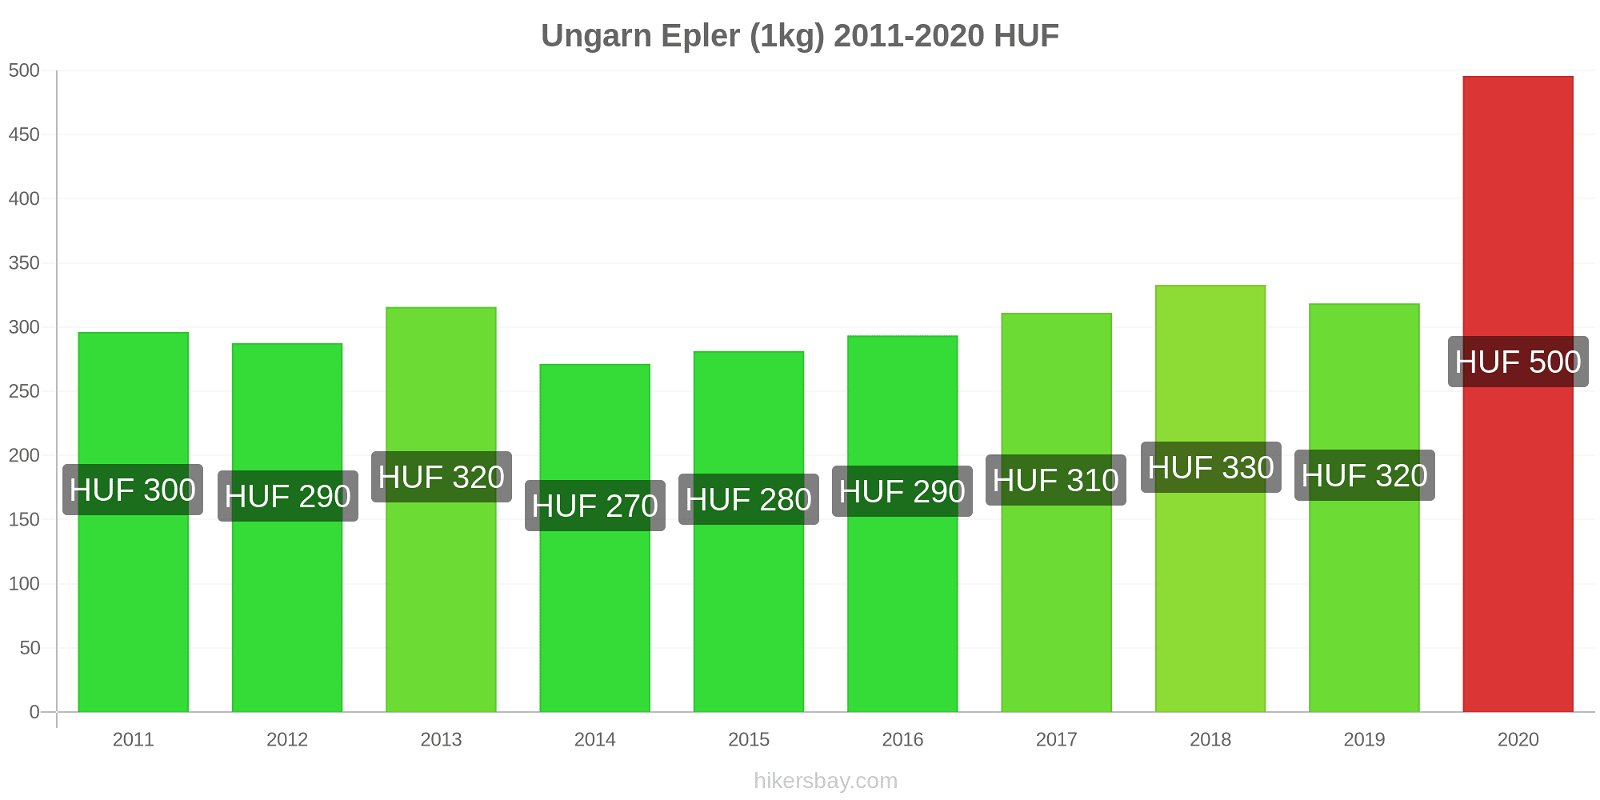 Ungarn prisendringer Epler (1kg) hikersbay.com